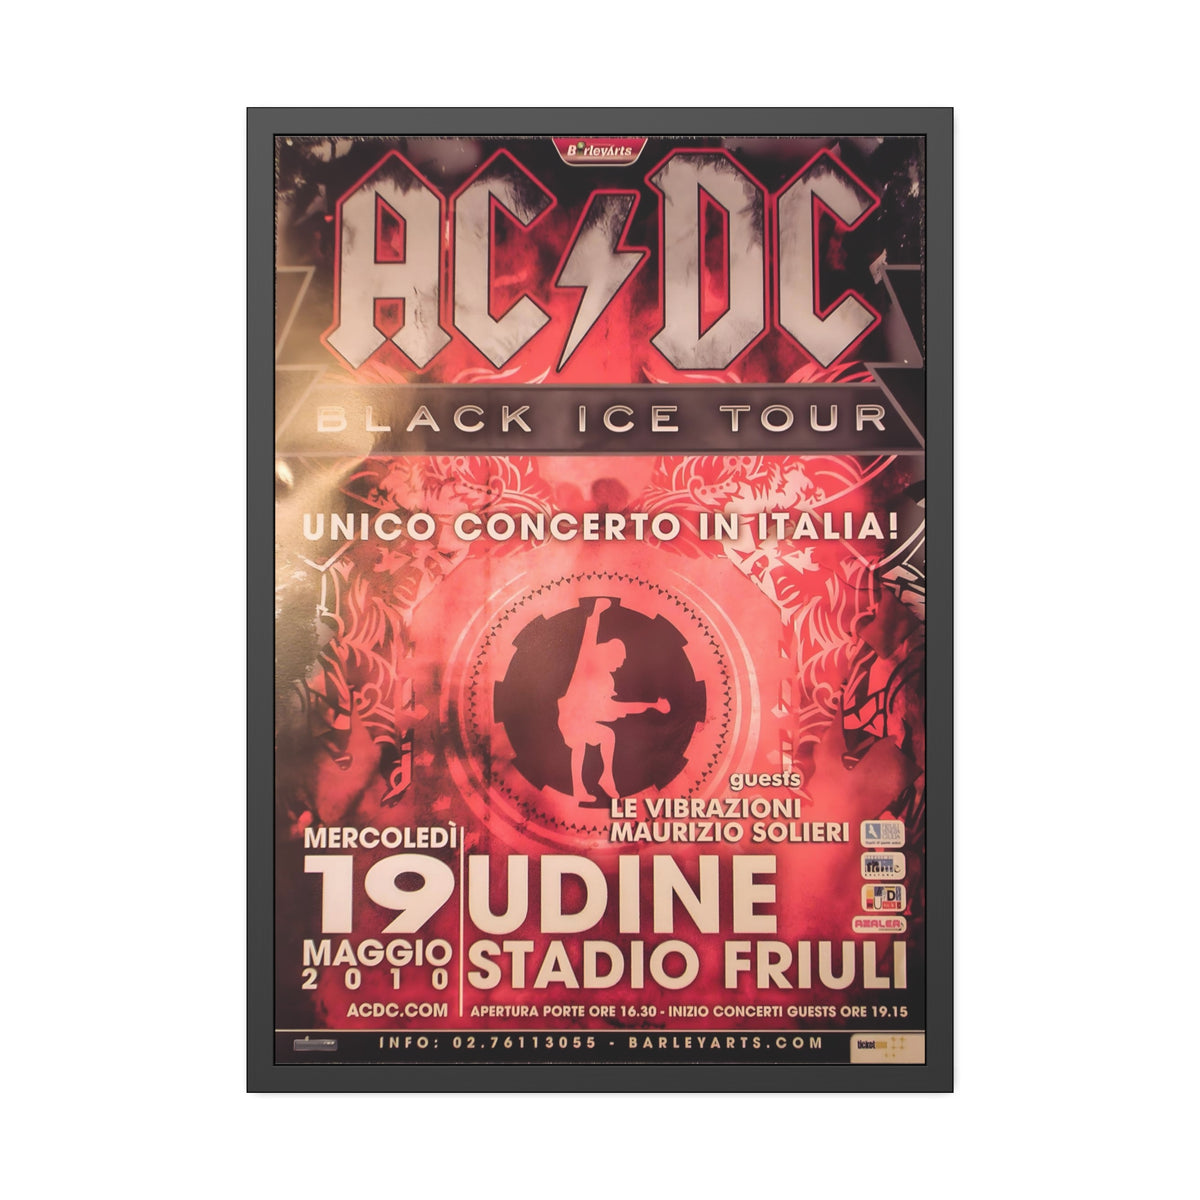 ACDC Art Concert Poster III